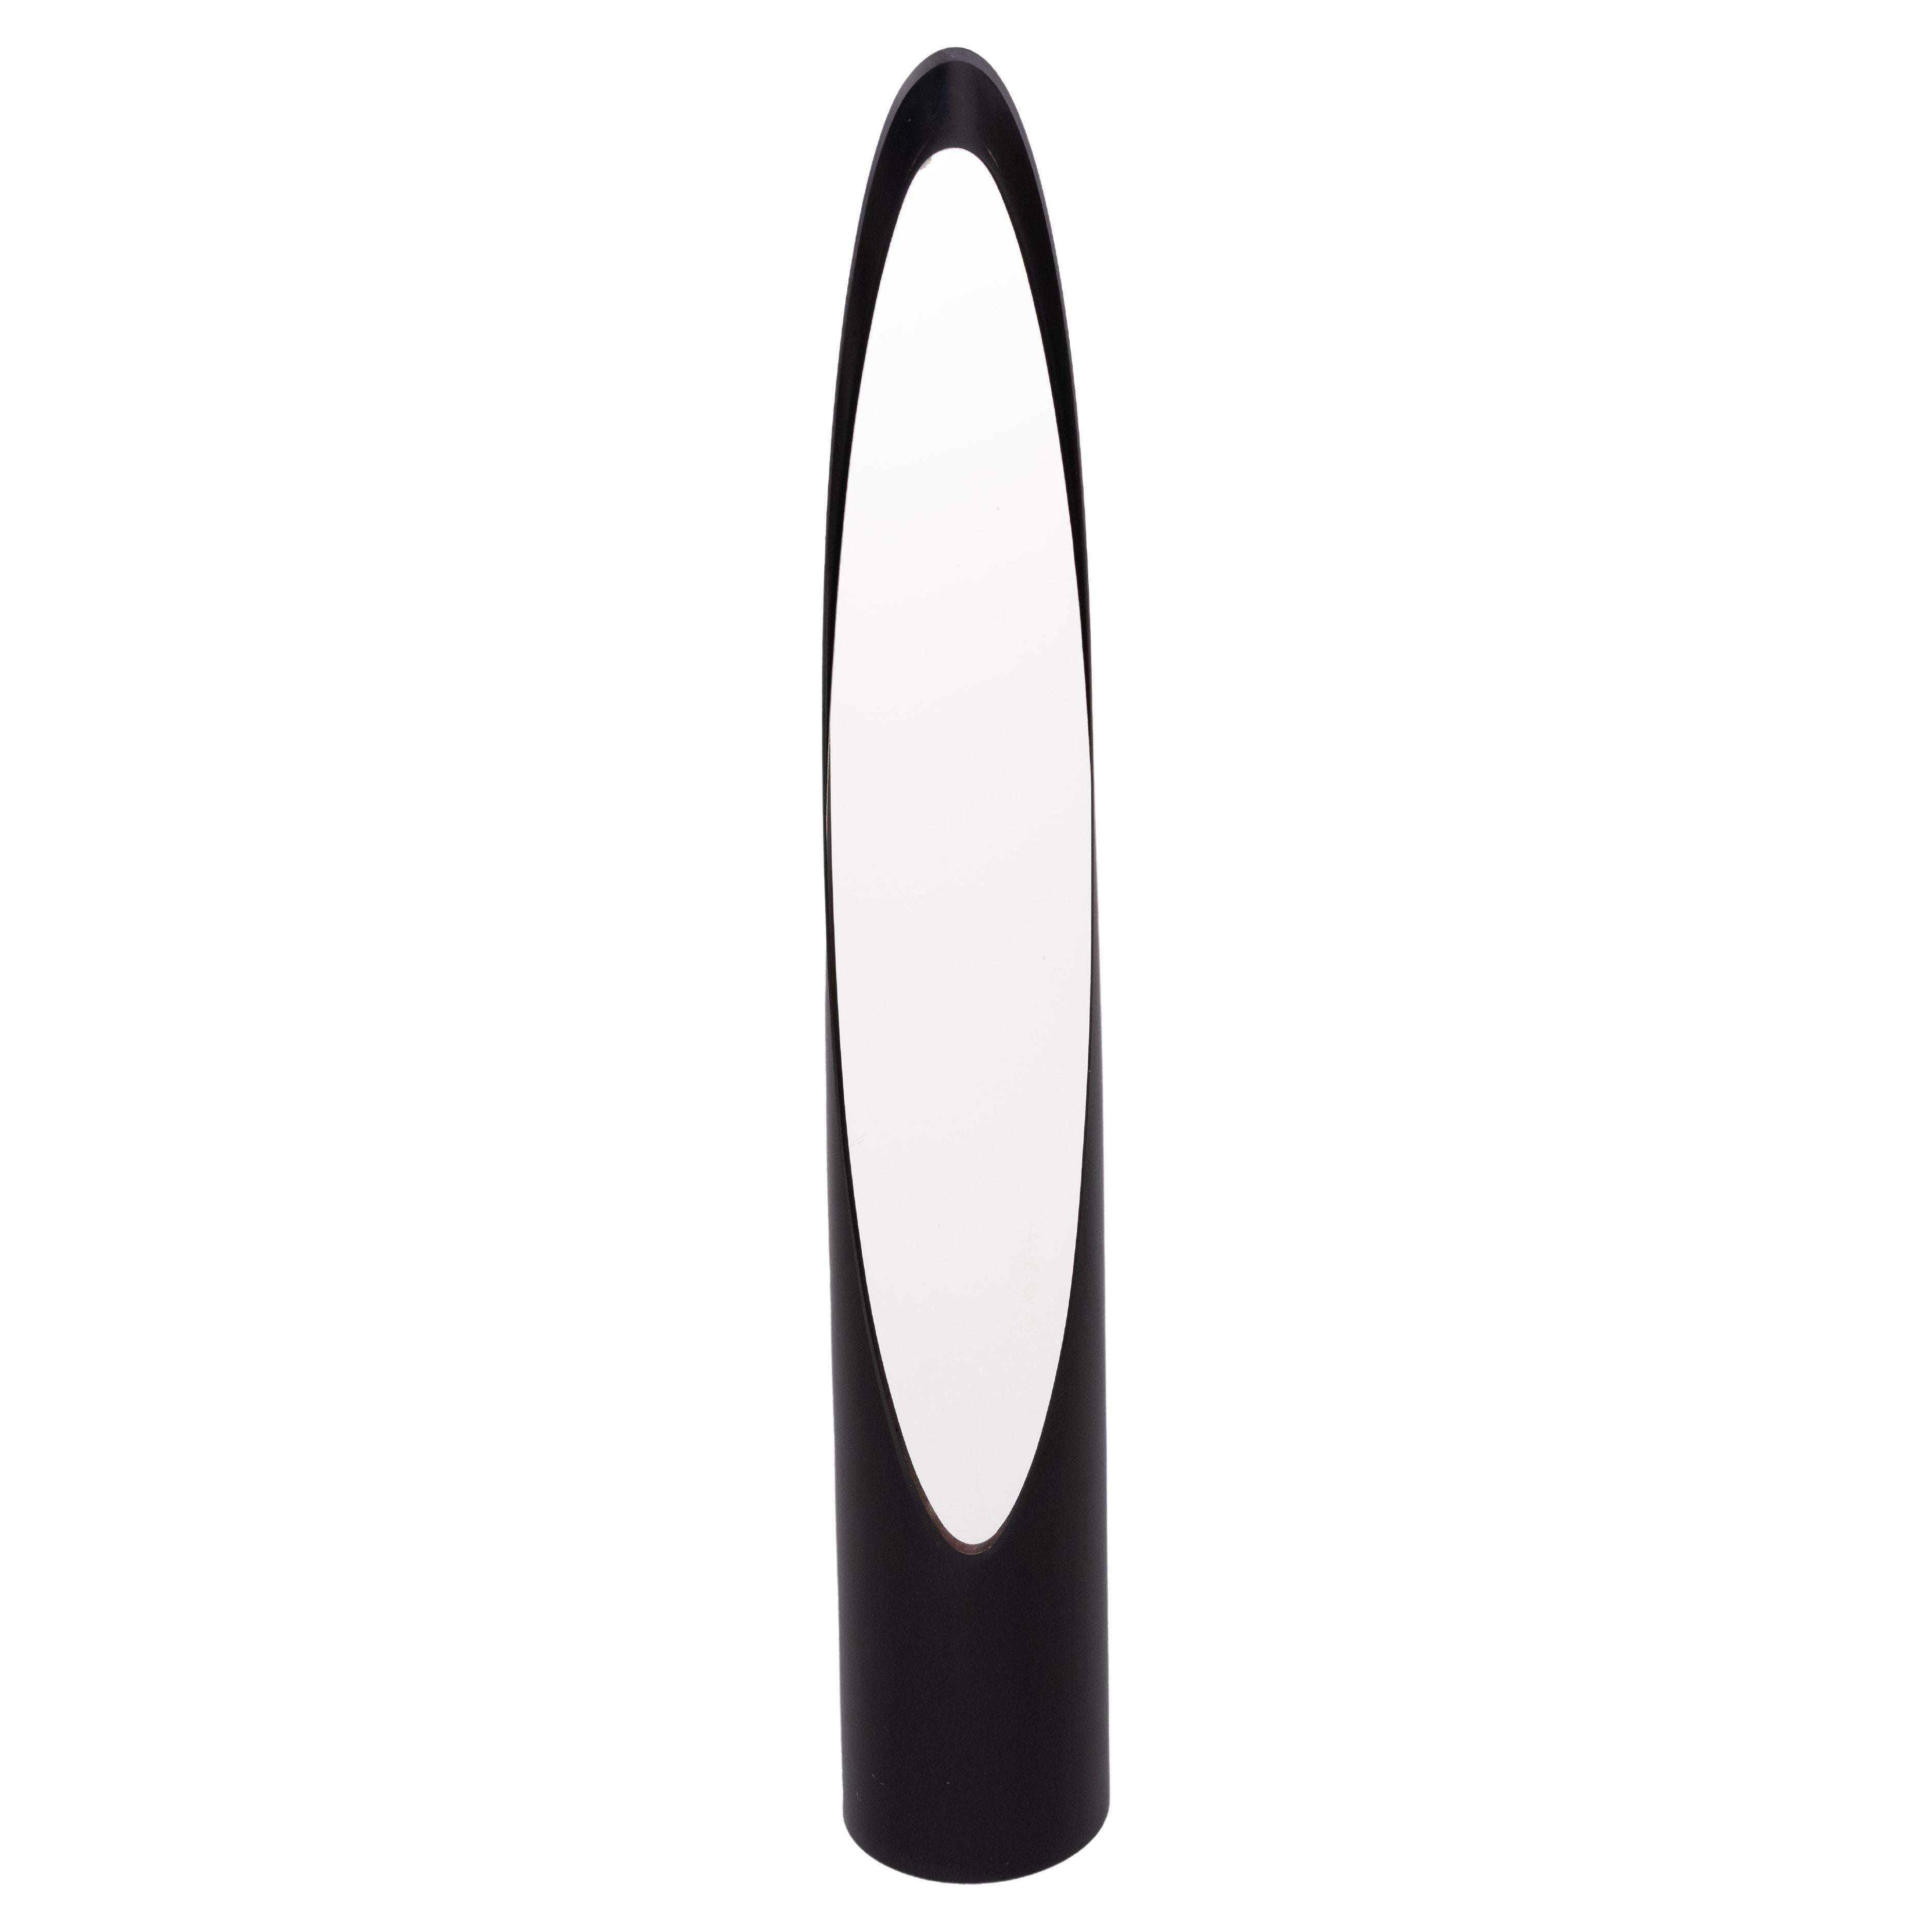 Sehr schöner Lippenstift-Spiegel in voller Länge. Schwarze Farbe, runde Form.
Space Ace im Stil der 1970er Jahre .  